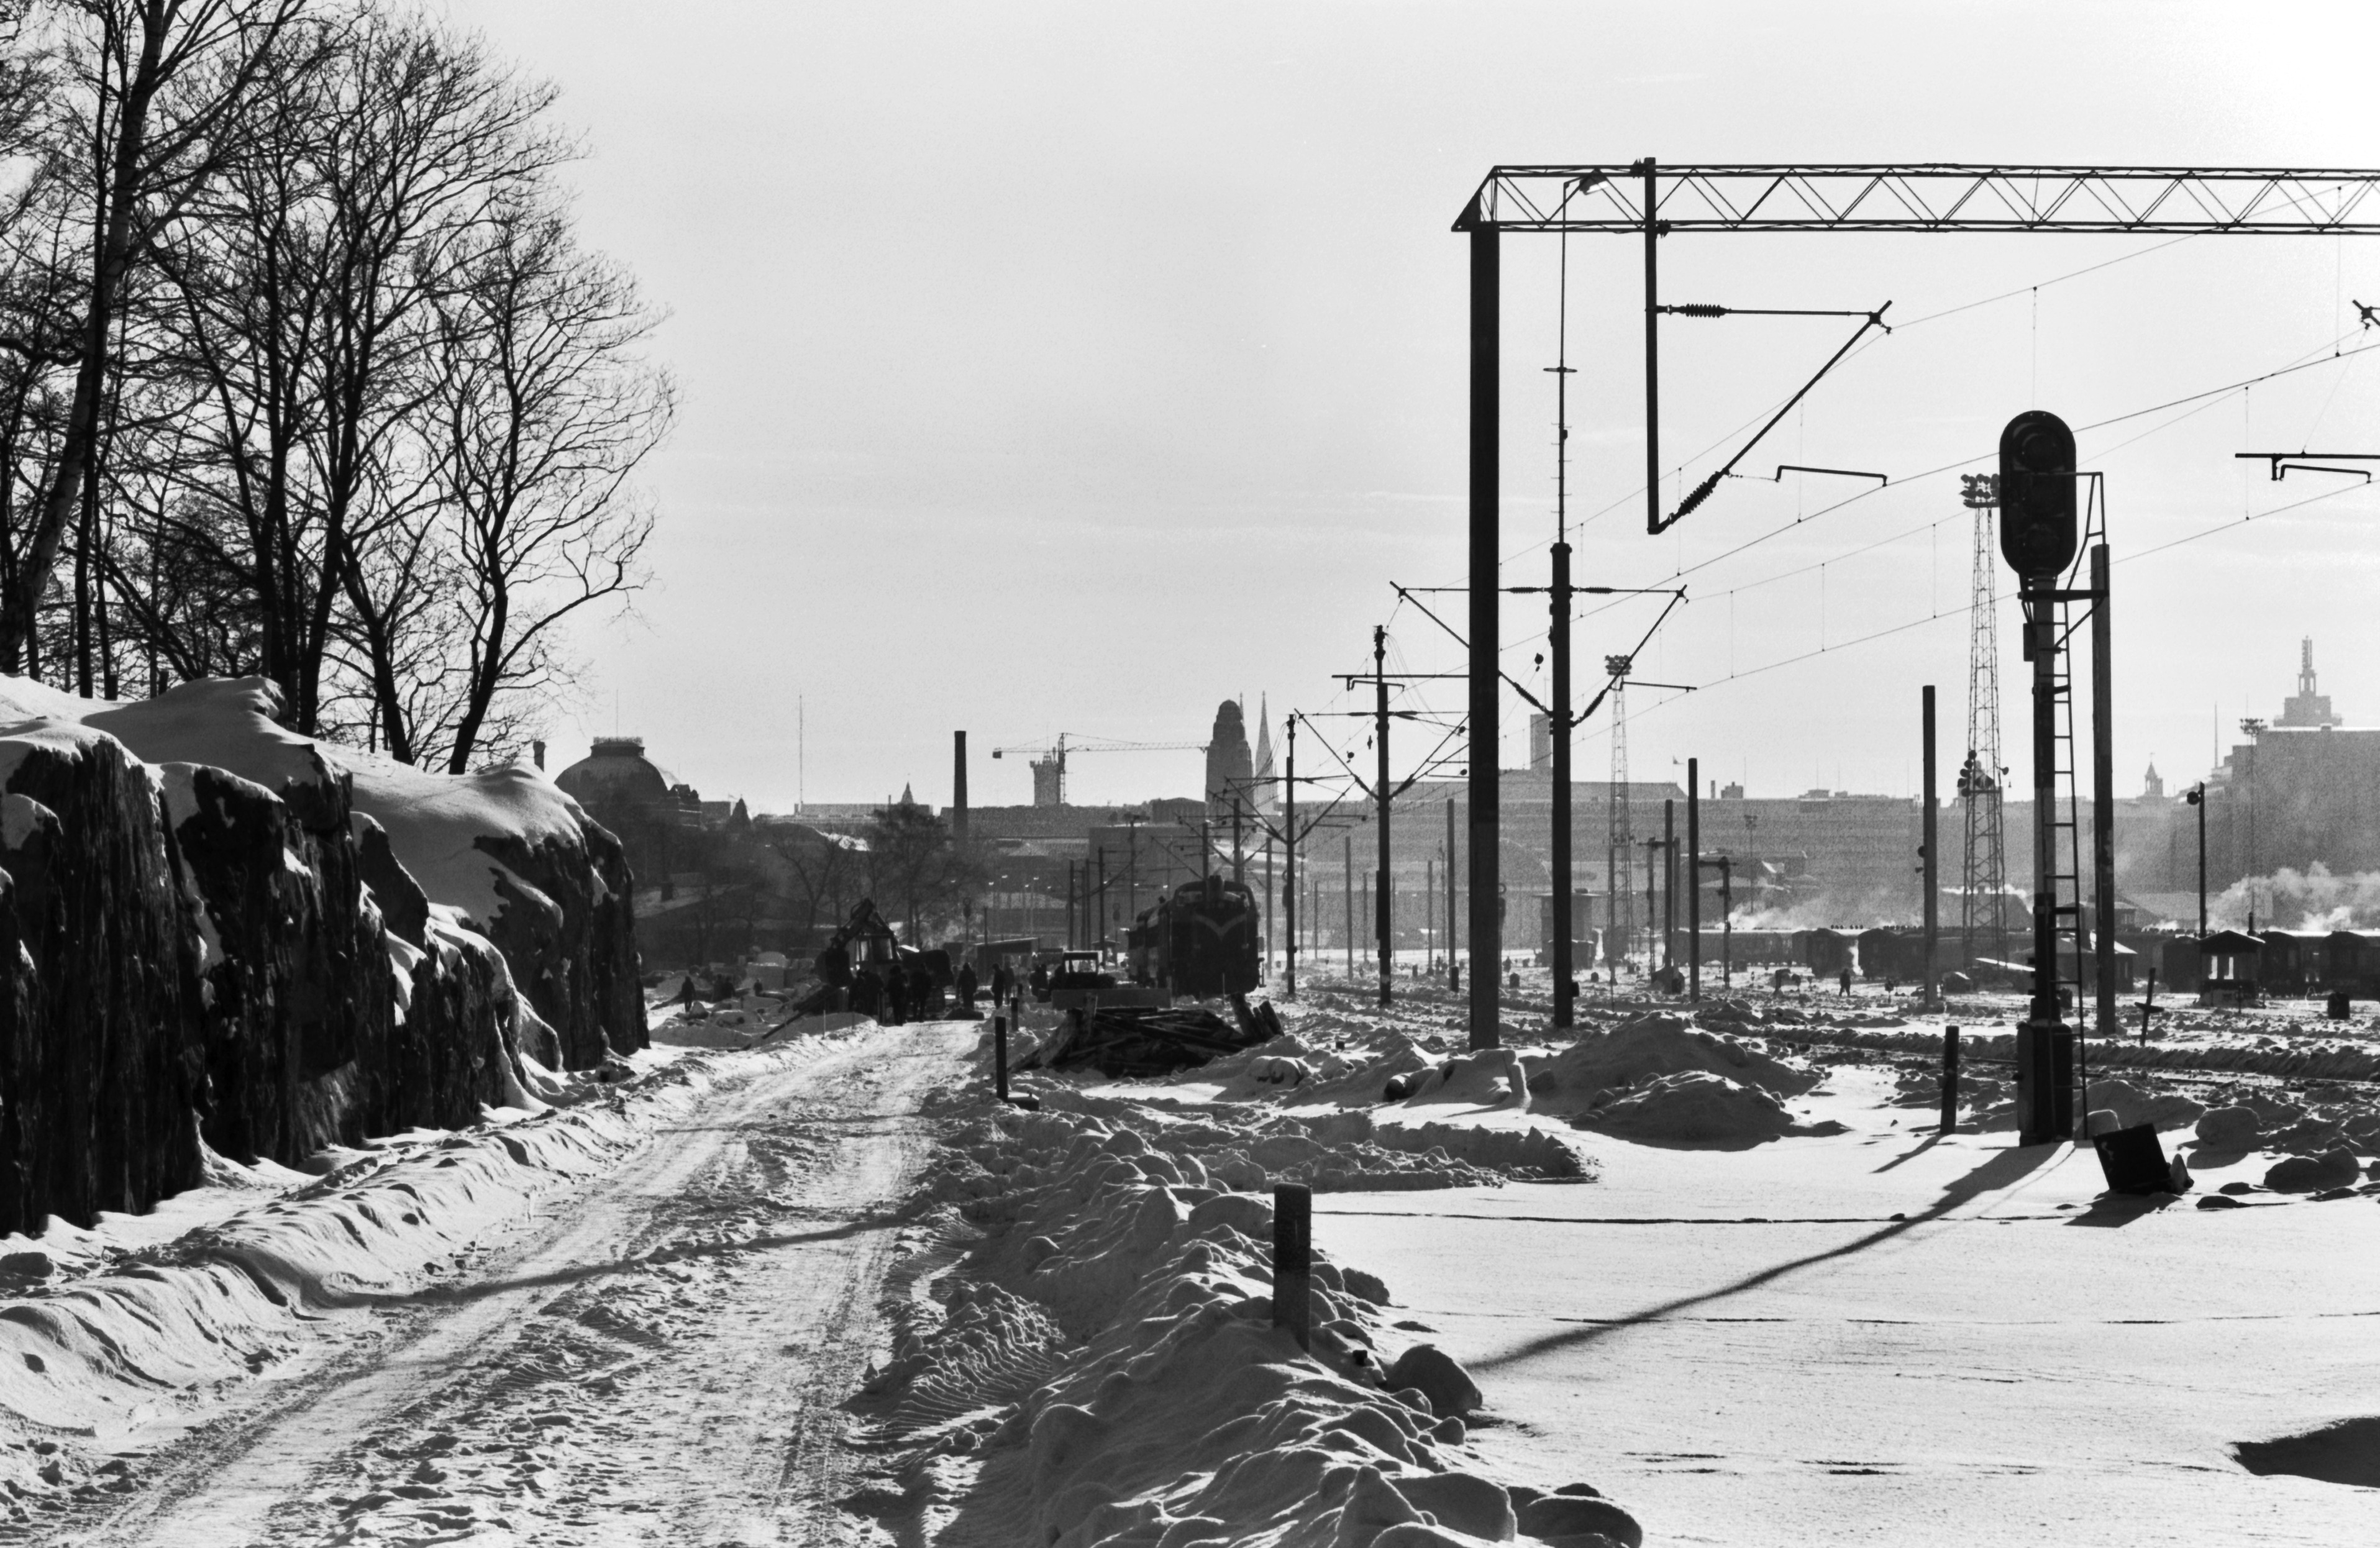 Miehiä töissä talvella lumisen pääradan varrella Eläintarhanlahden kohdalla. Kuva Linnunlaulun sillan suunnalta Helsingin rautatieasemalle päin.